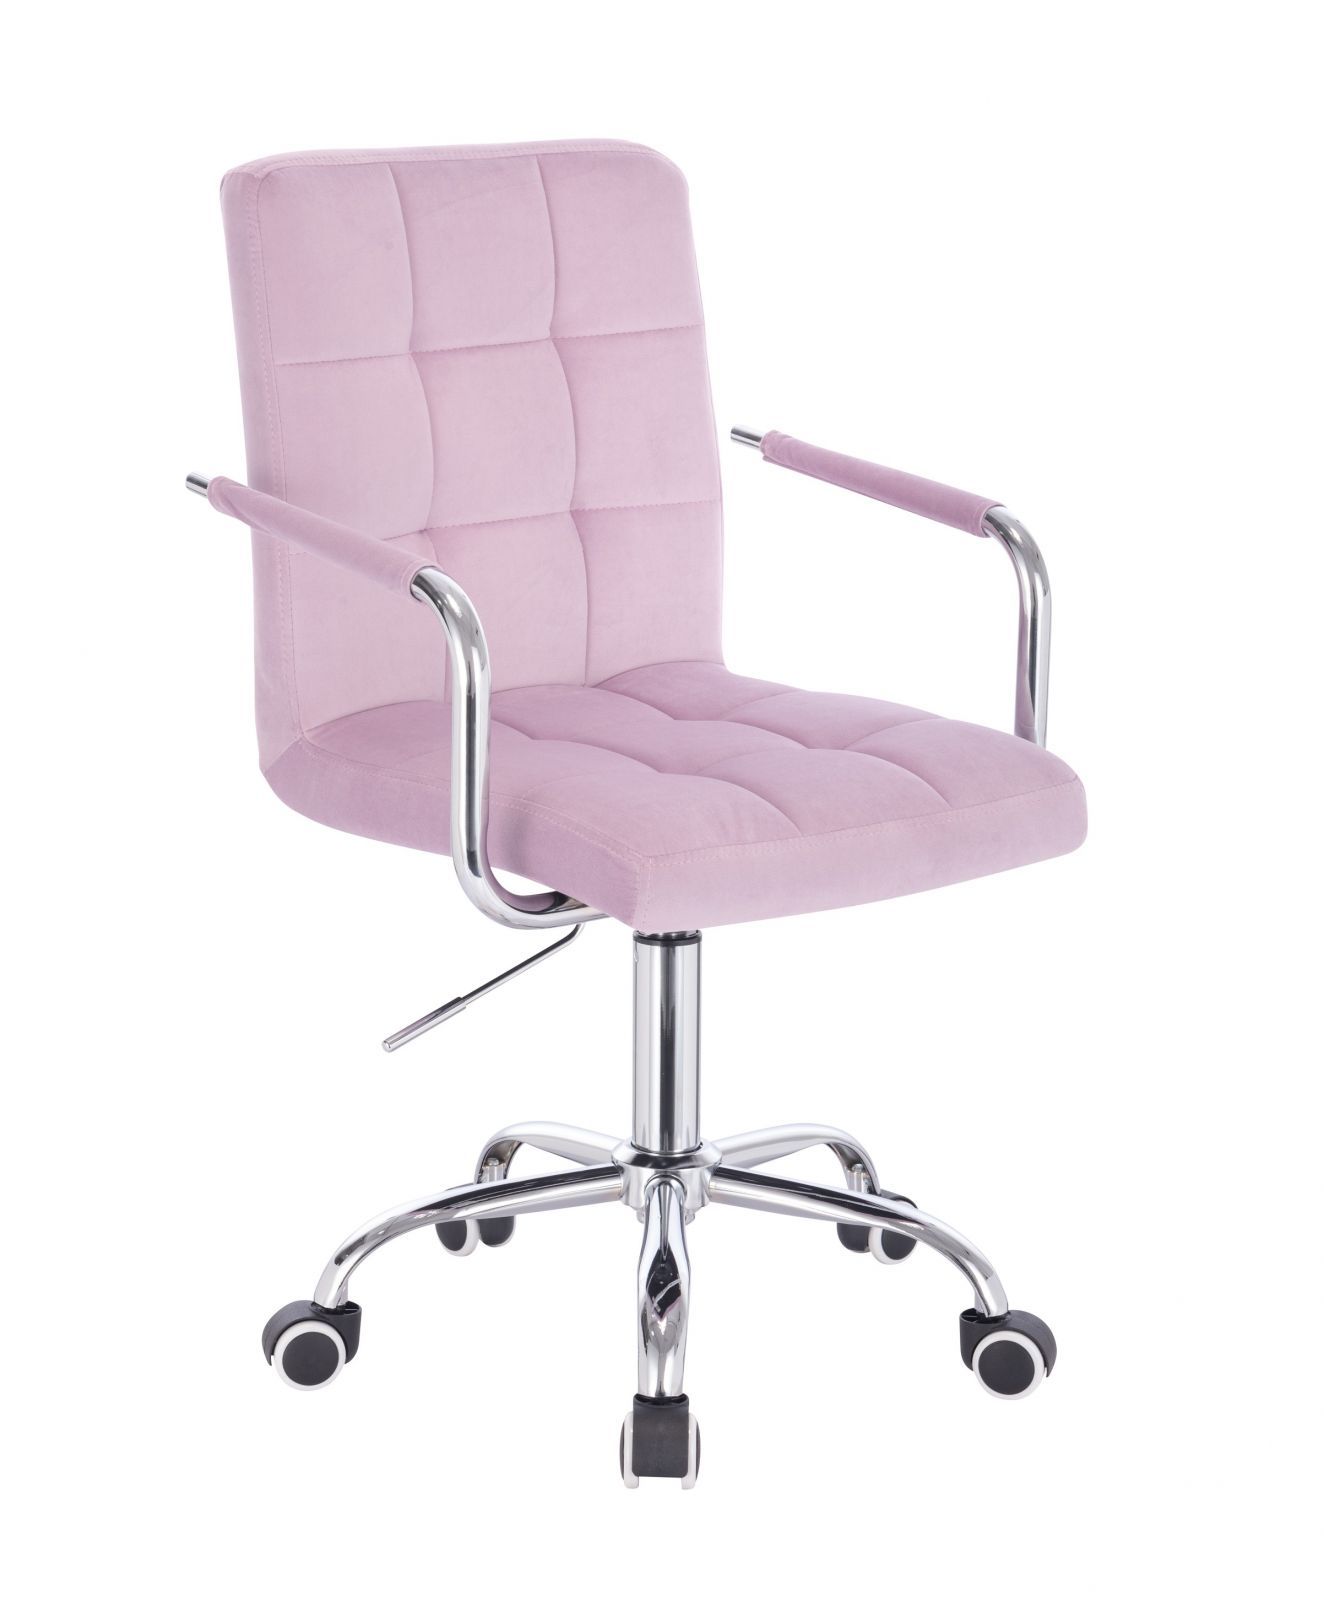 LuxuryForm Kosmetická židle VERONA VELUR na stříbrné podstavě s kolečky - fialový vřes